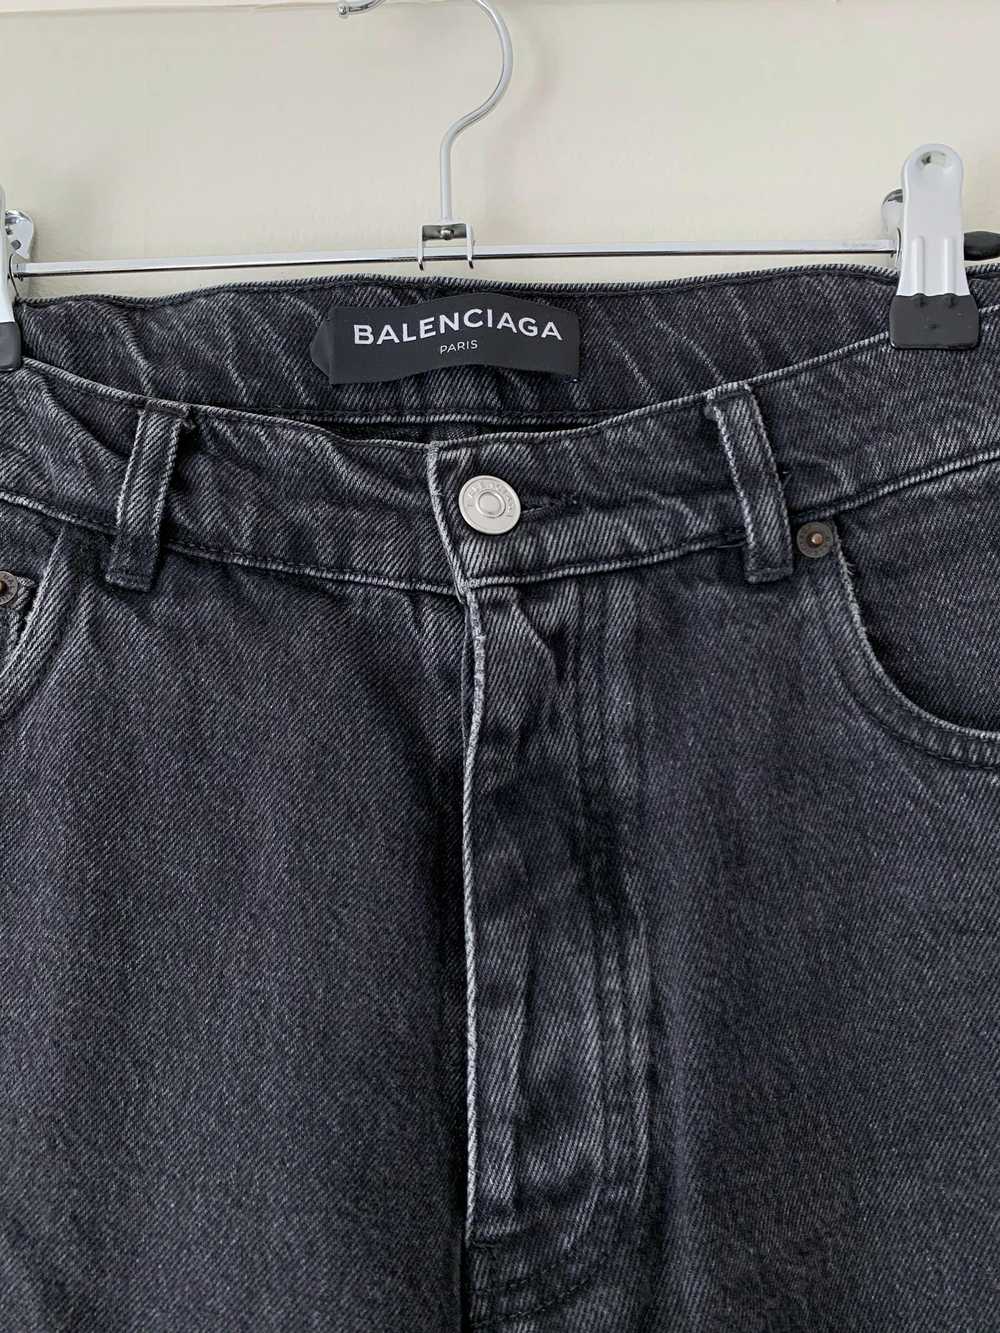 Balenciaga SS18 Washed Grey Jeans - image 2